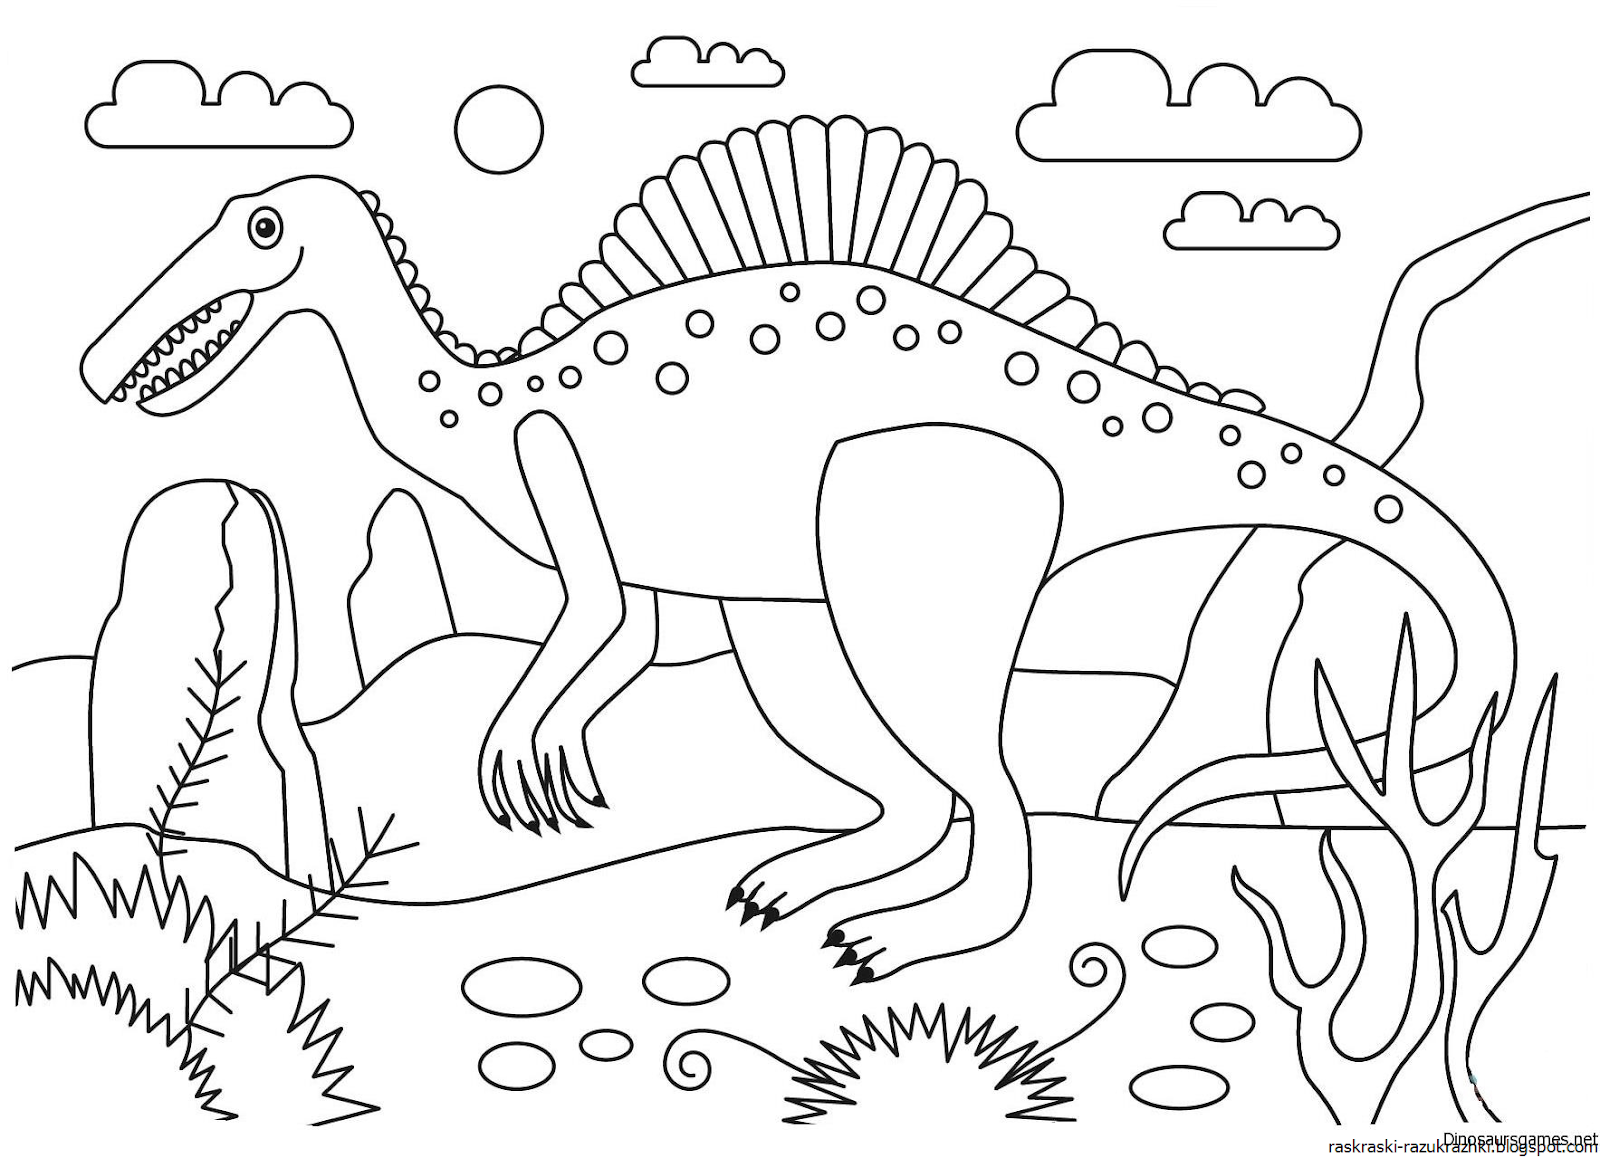 Раскраски динозавры формат а4. Спинозавр раскраска. Динозавры / раскраска. Динозавр раскраска для детей. Динозавры для раскрашивания детям.